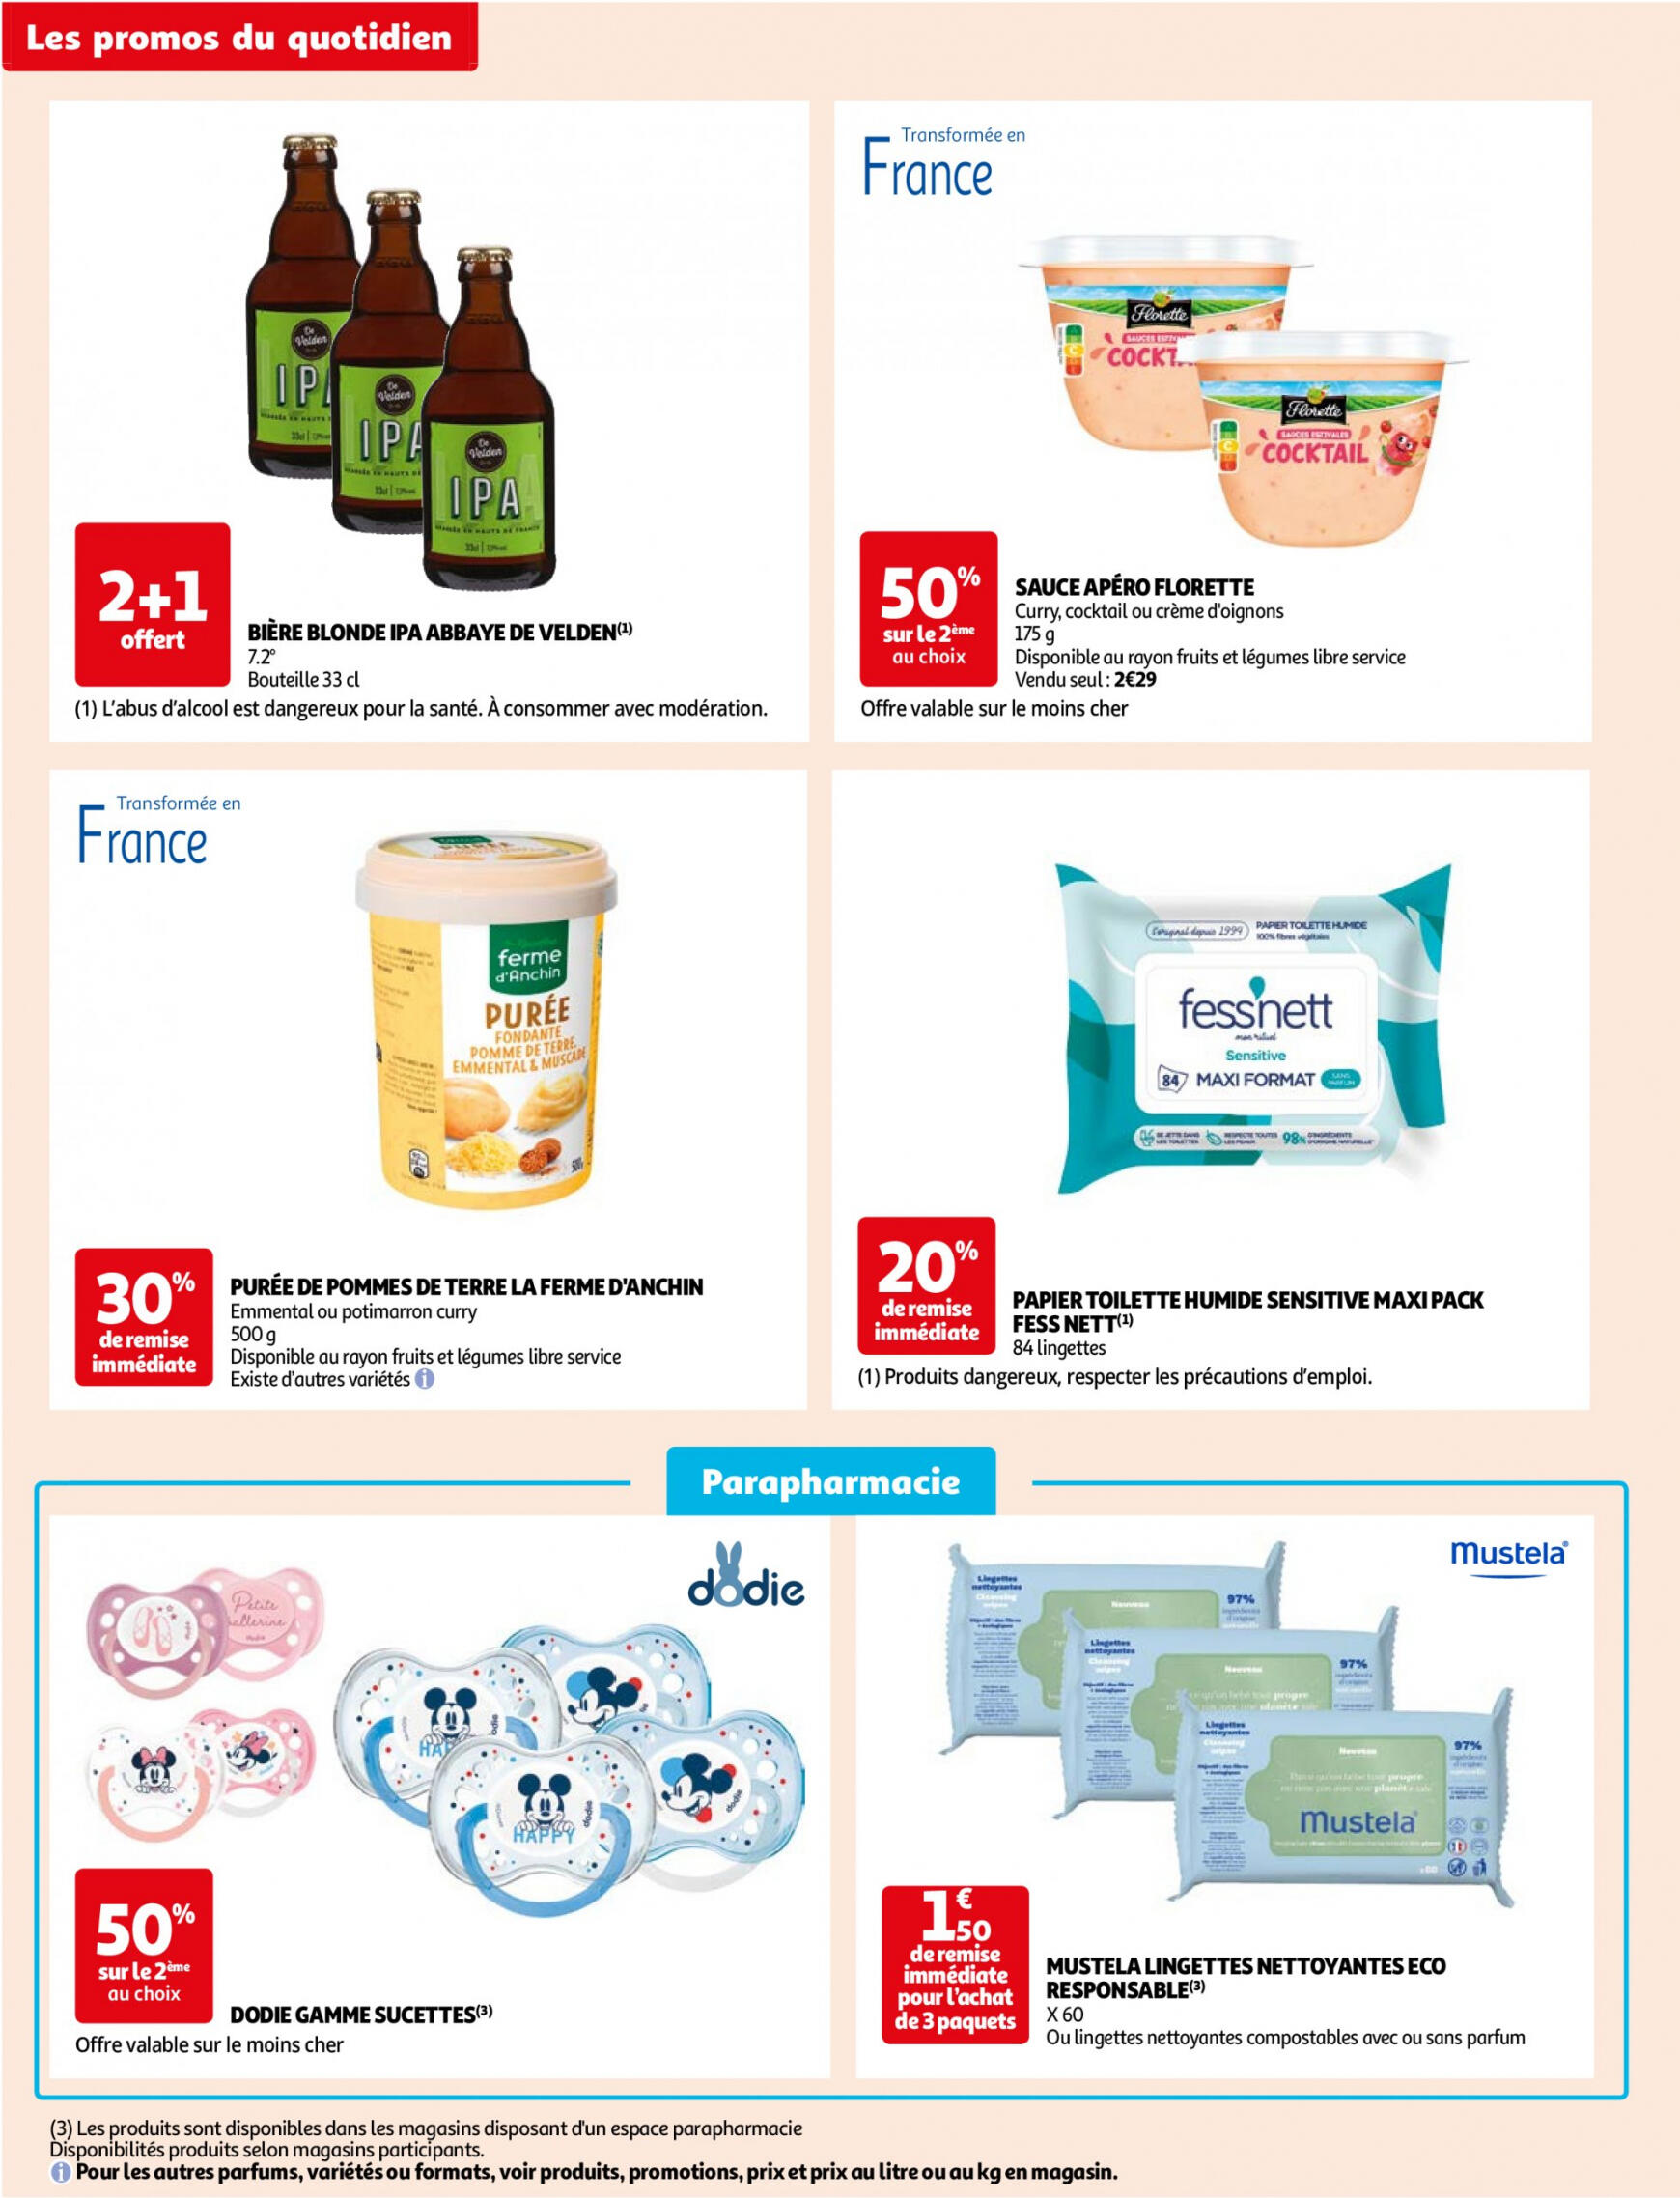 auchan - Auchan - Des économies au quotidien folder huidig 14.05. - 03.06. - page: 10